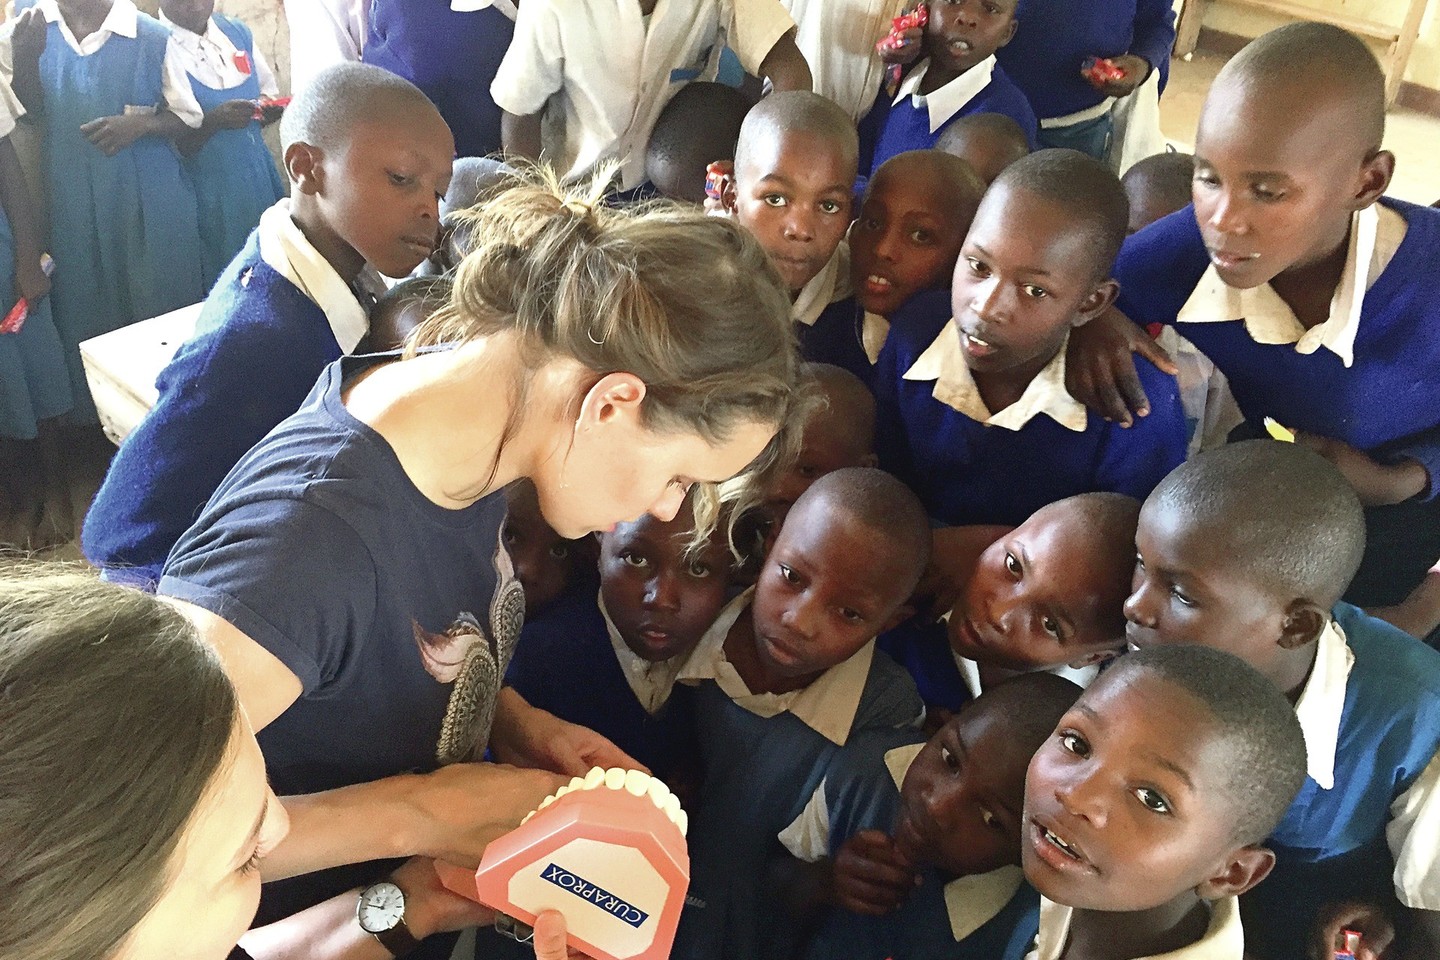 Lietuviams teko Kenijos gyventojus mokyti higienos įpročių – savanoriai mokyklose vaikams išdalijo tūkstantį šepetukų ir pastų tūtelių, mokė valytis dantis. Viliamasi, kad jie išmoks prižiūrėti dantis.